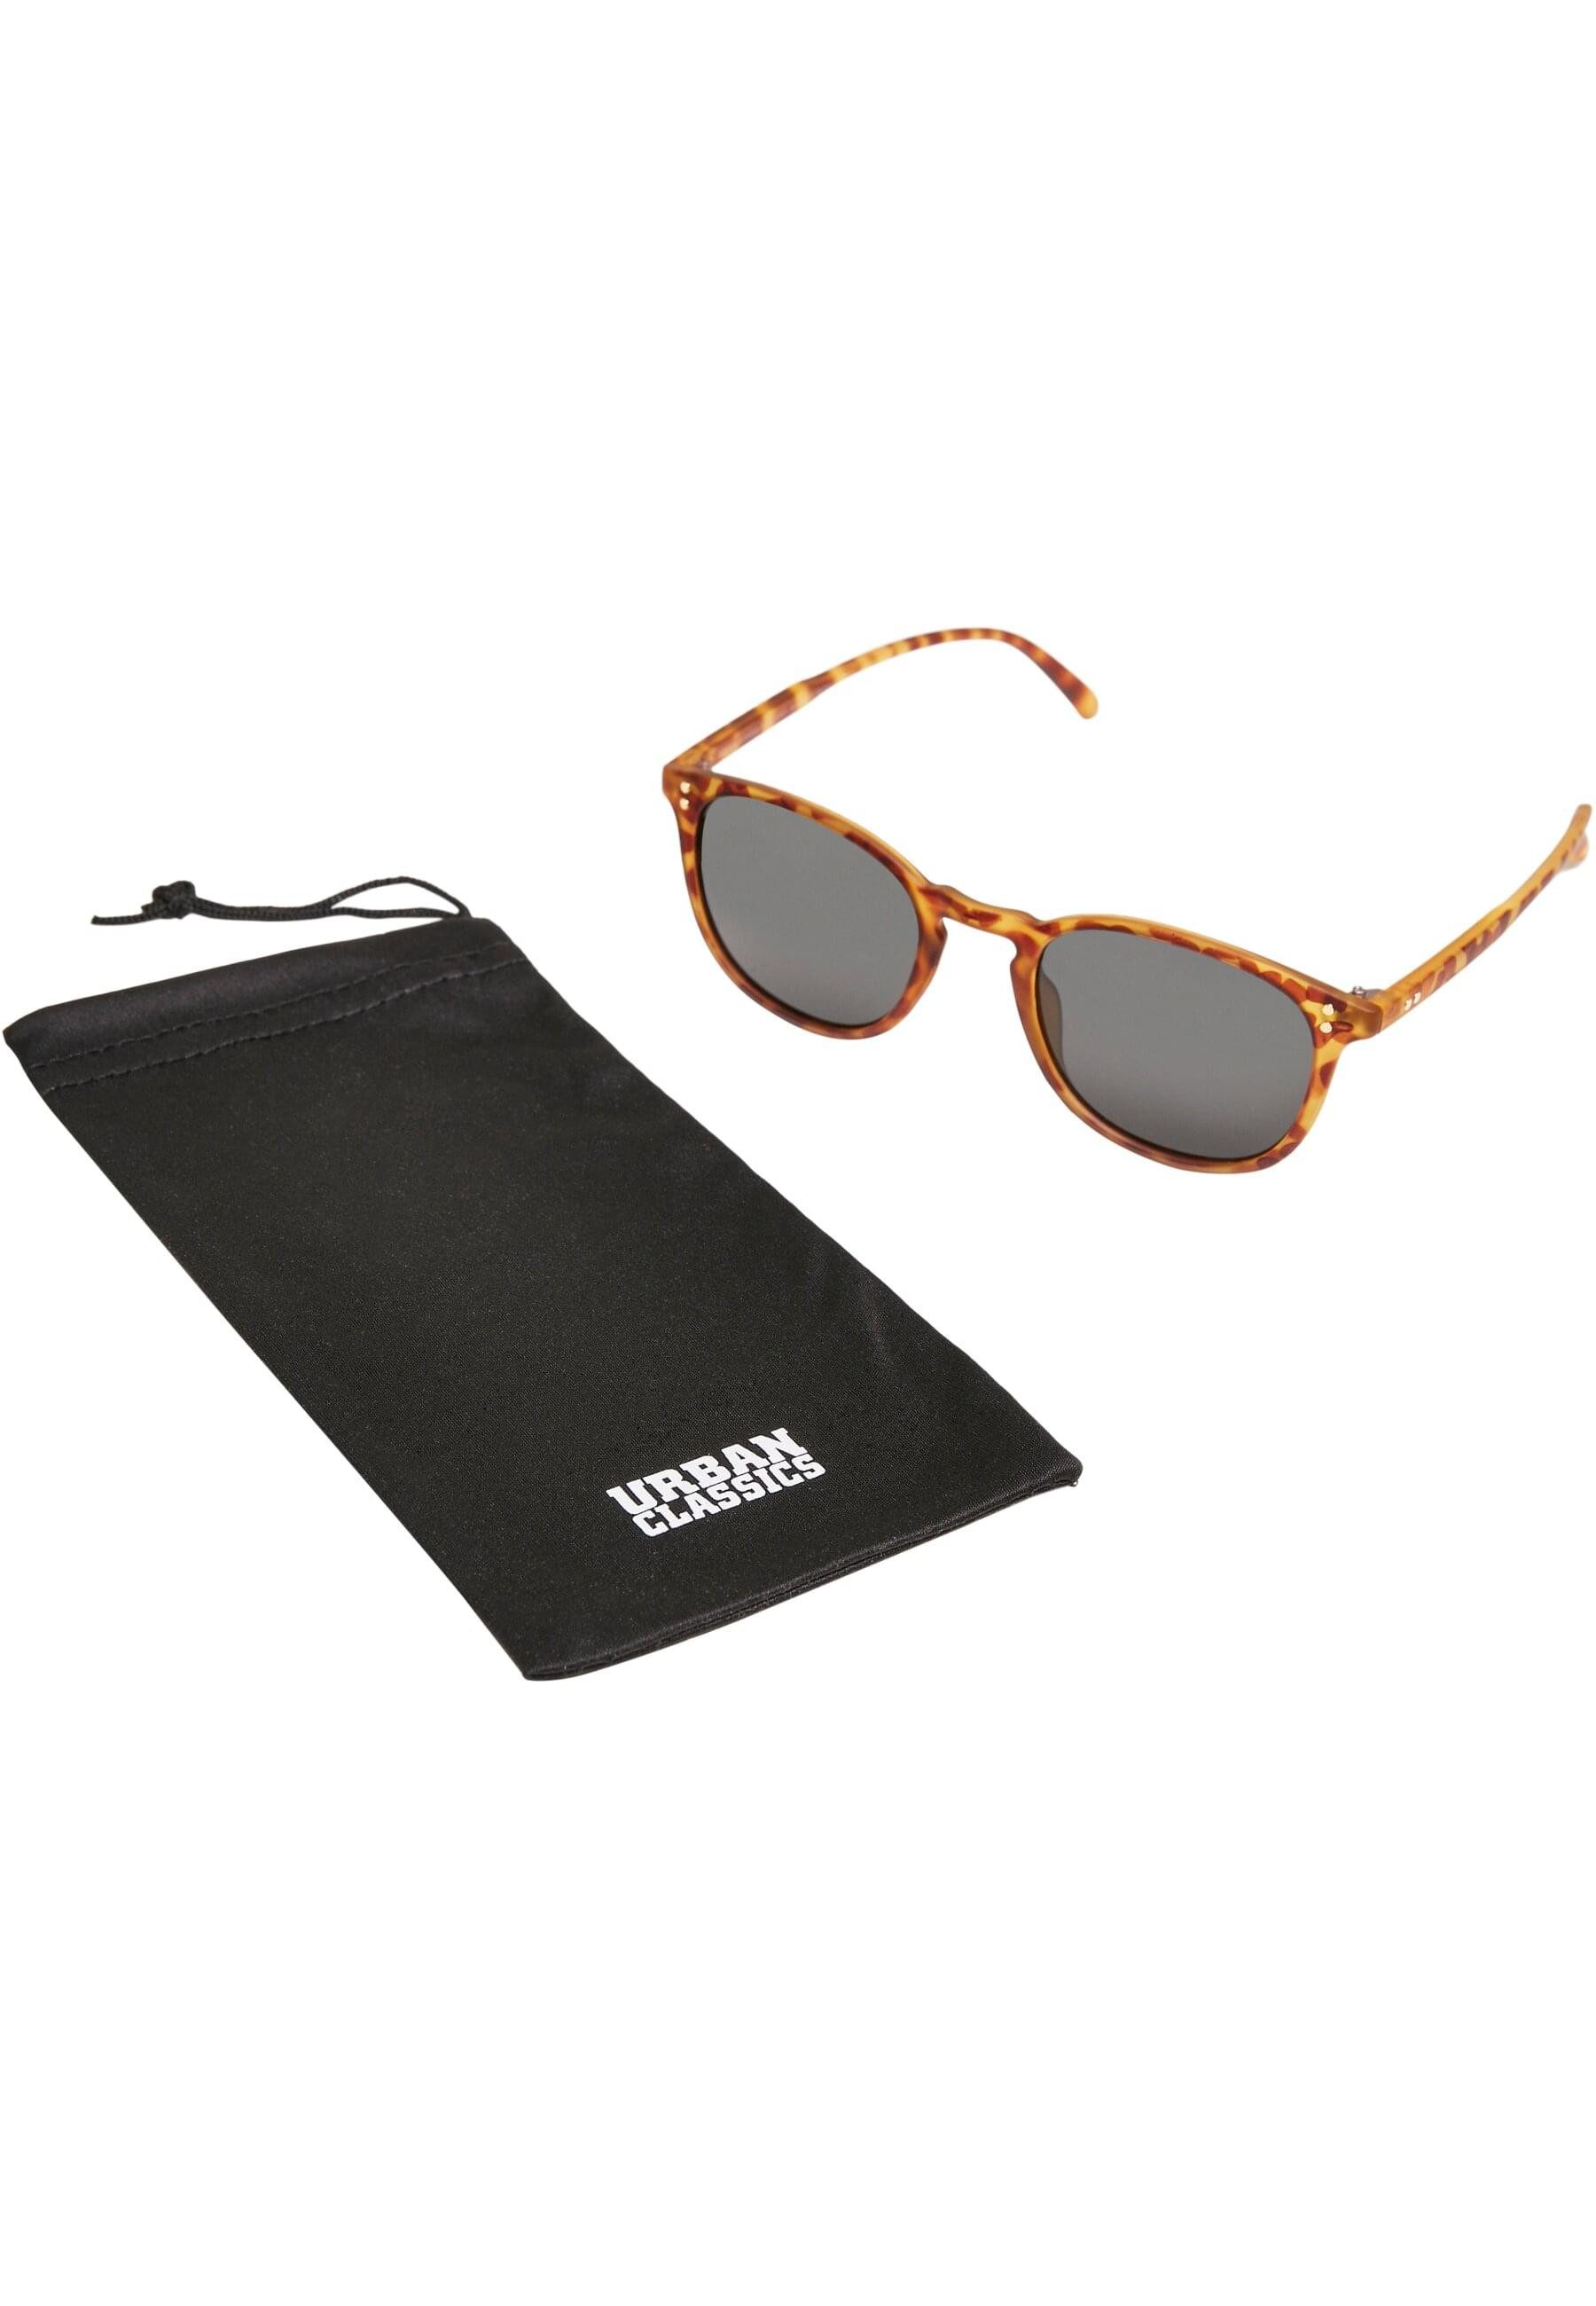 URBAN CLASSICS Sonnenbrille Urban Classics Unisex Sunglasses Arthur UC